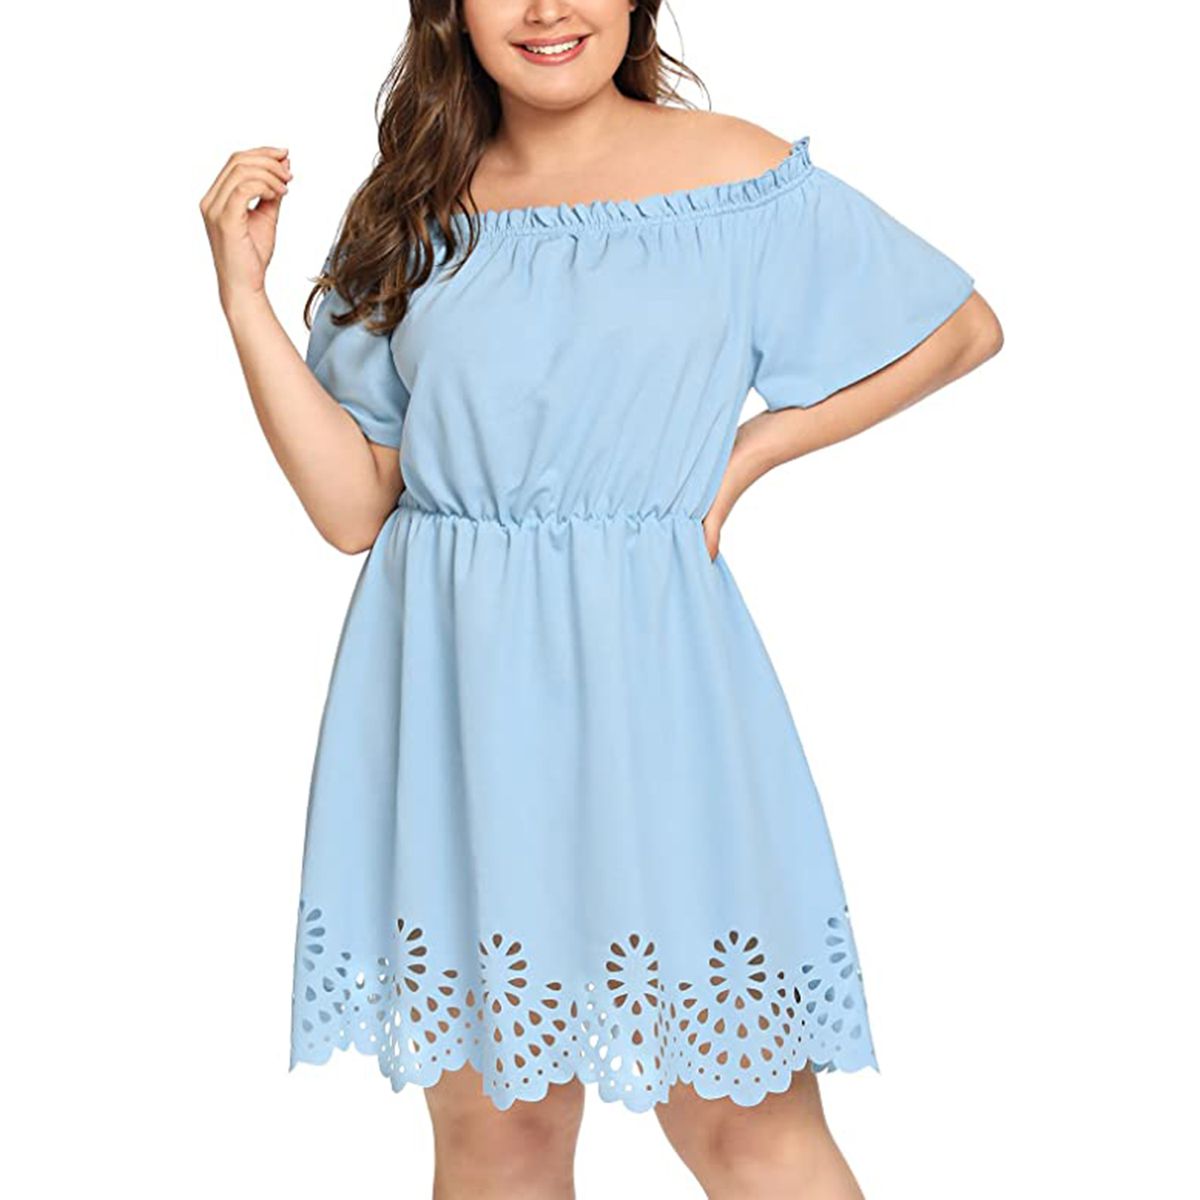 Plus-size summer dresses